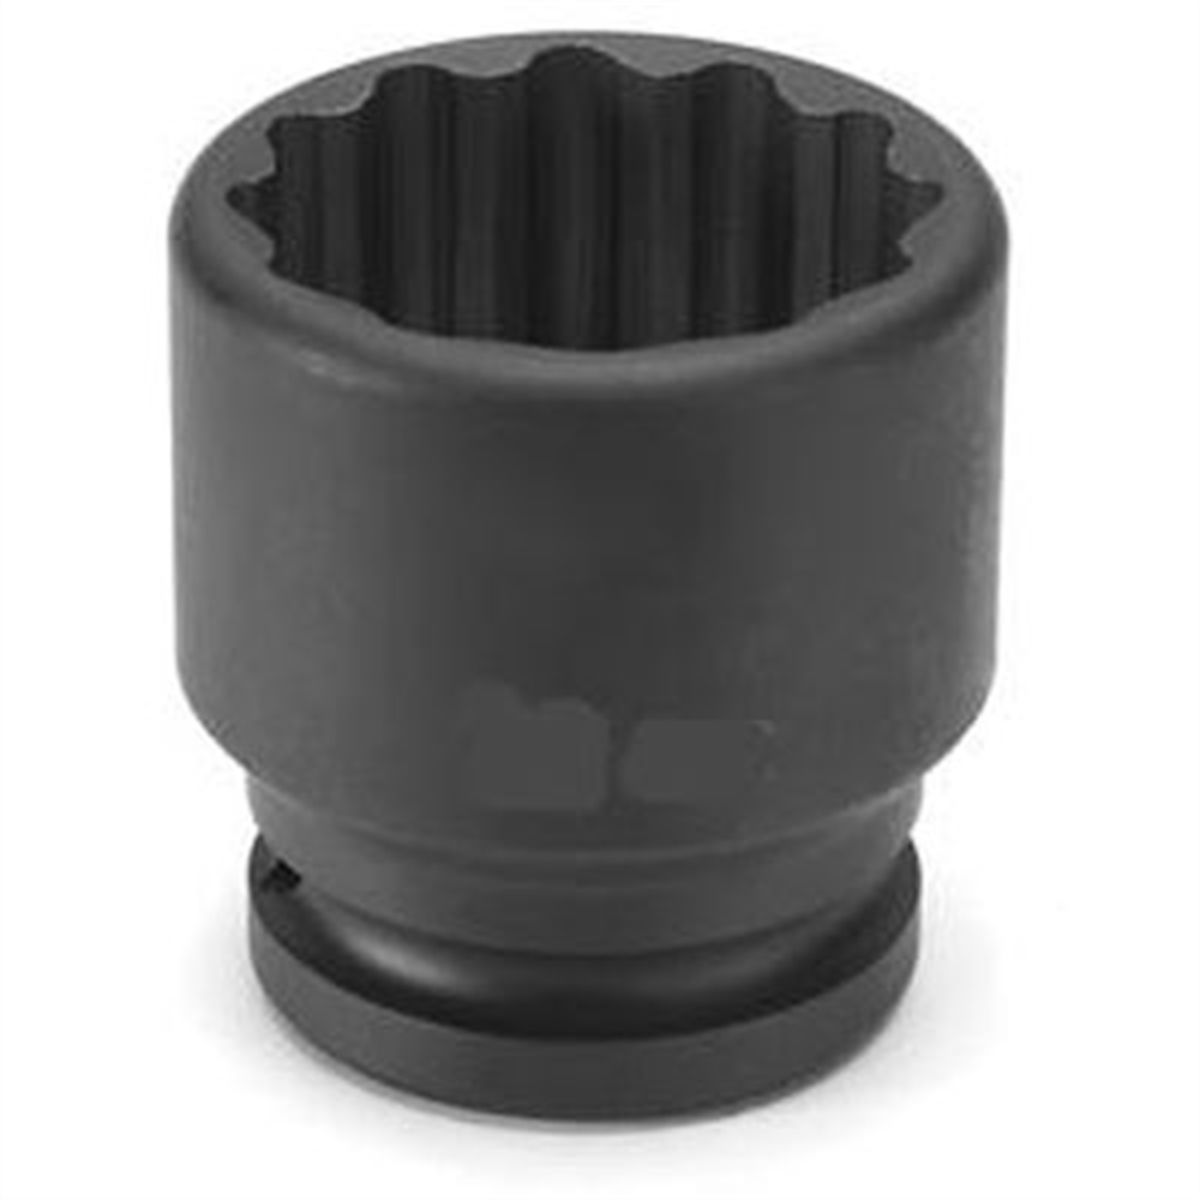 3/4" Drive x 21mm Standard - 12 Point Impact Socket